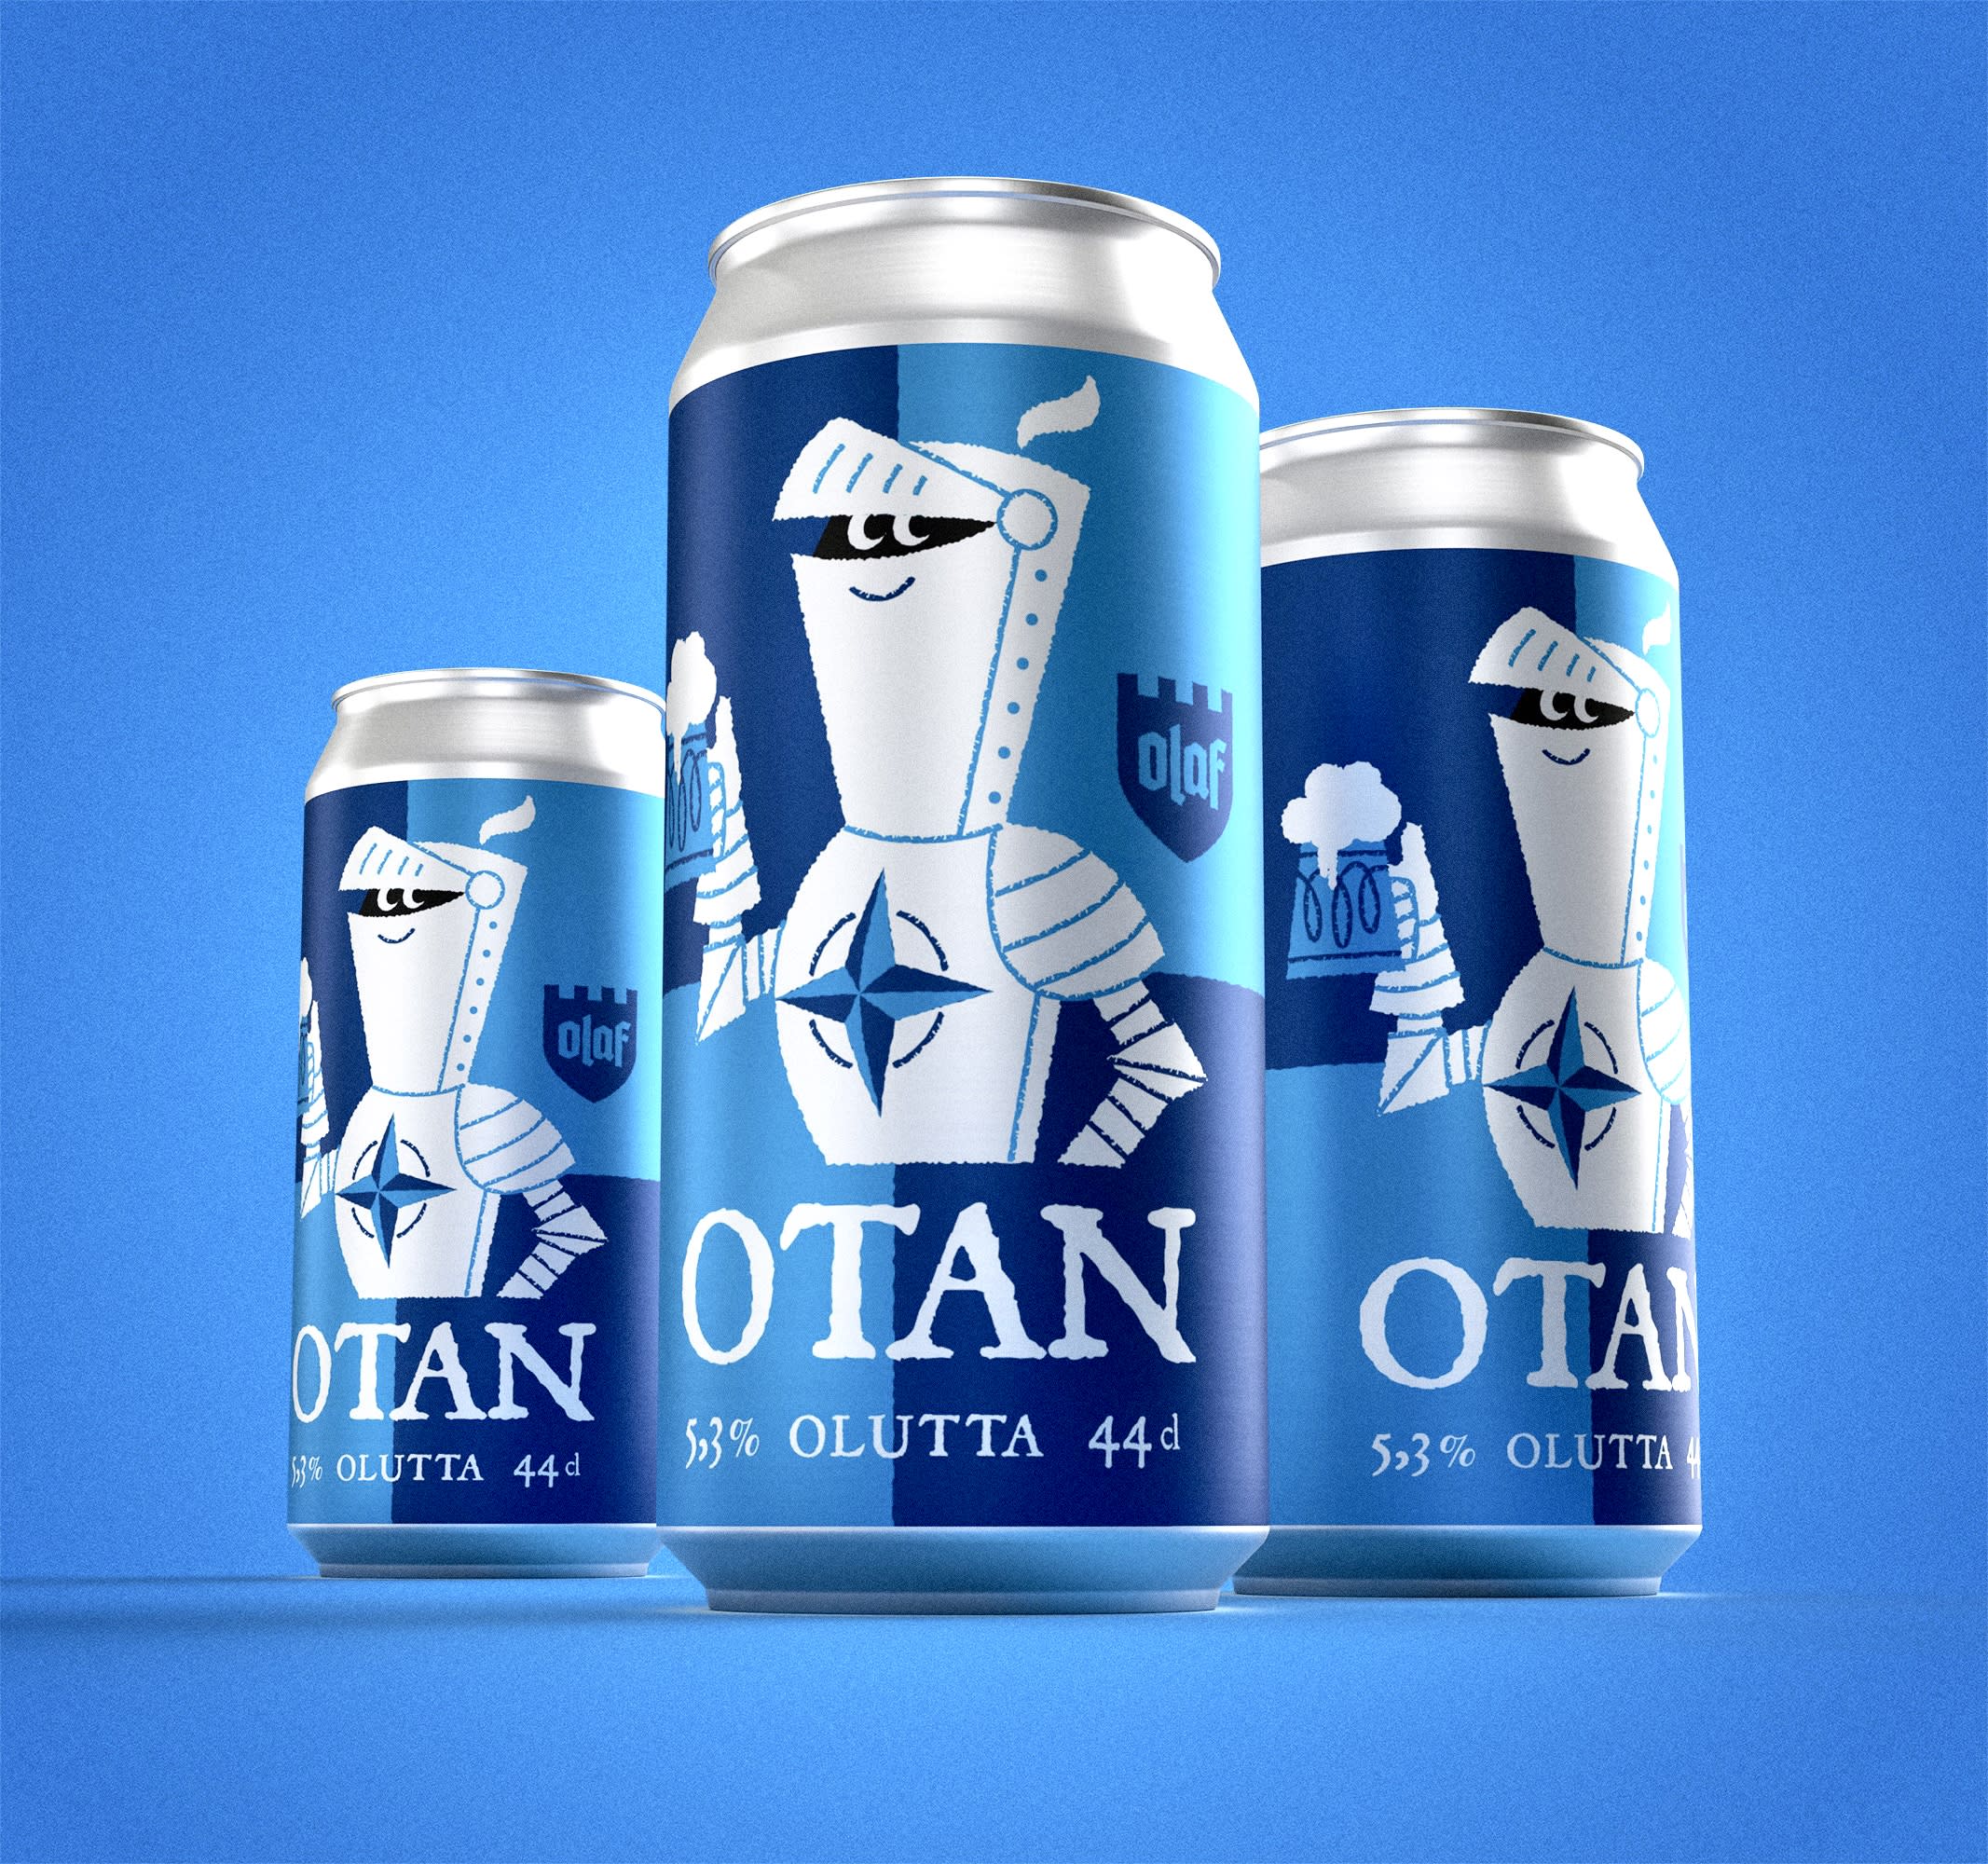 Finnische Brauerei bringt NATO-Bier auf den Markt